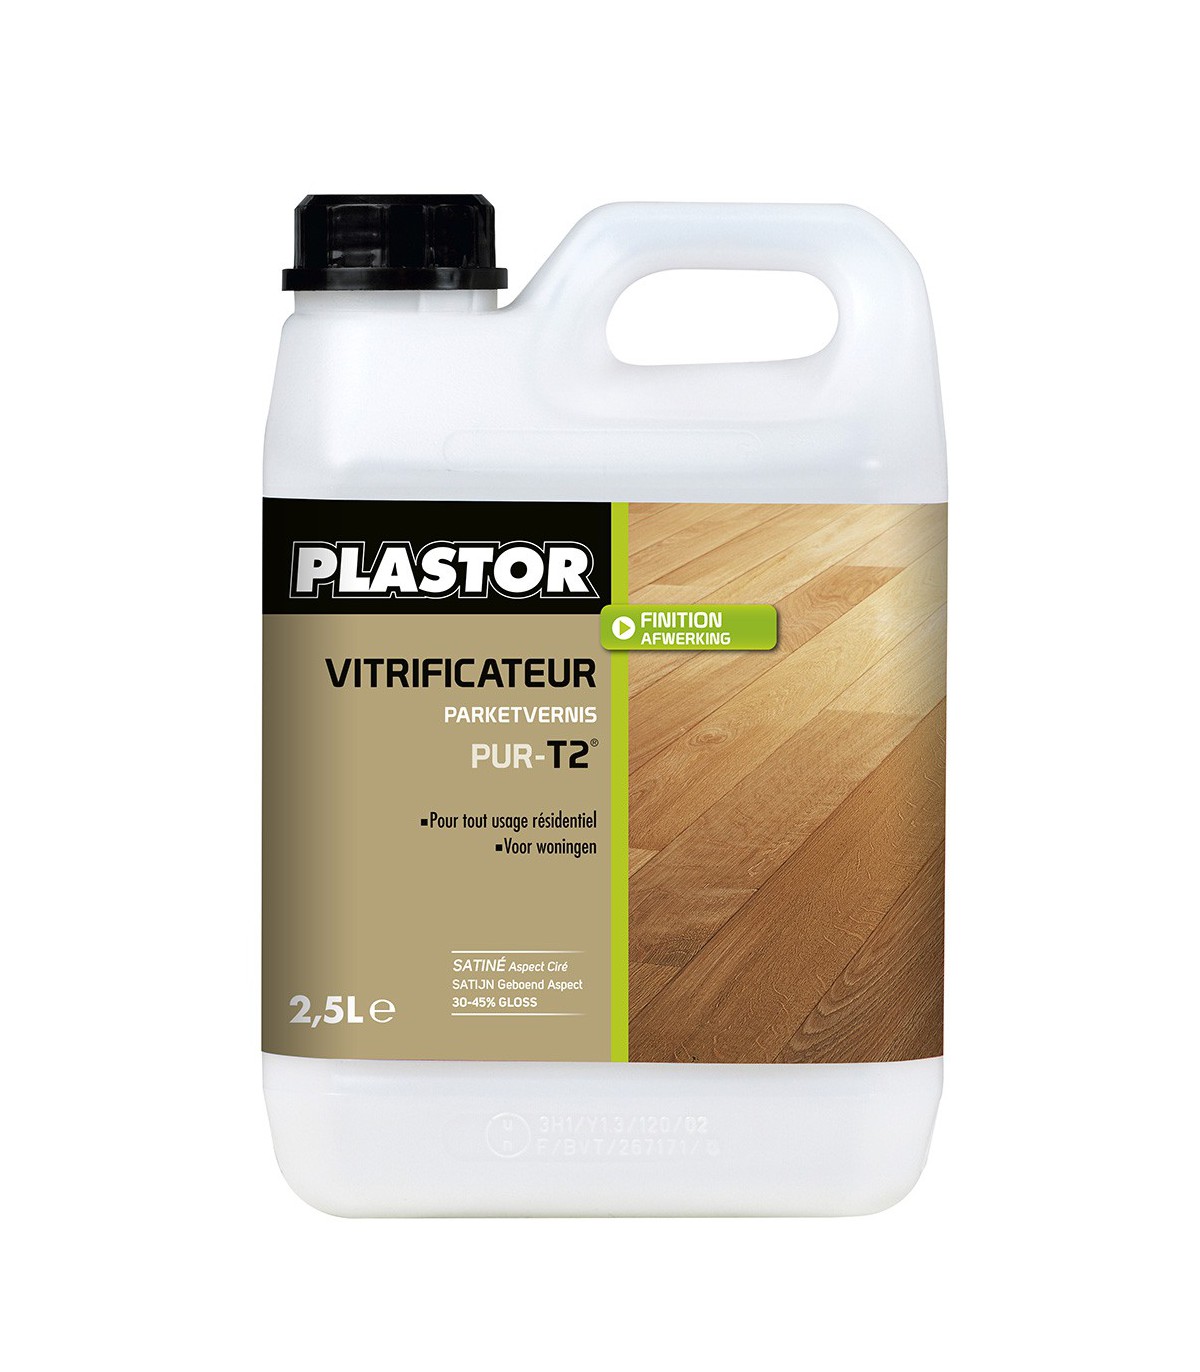 Vitrificateur parquet Pur-T2 gloss 30-45 satiné - 2,5 litres - PLASTOR